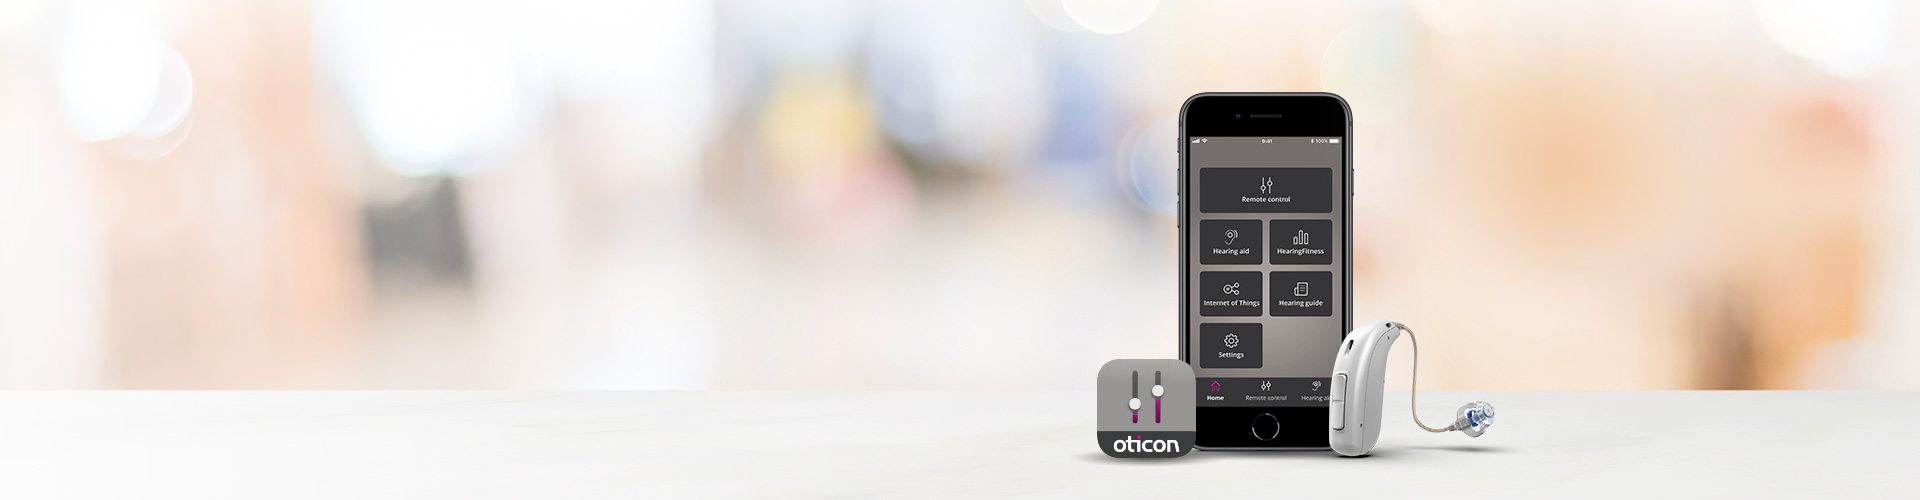 Oticon ON App version 2.0